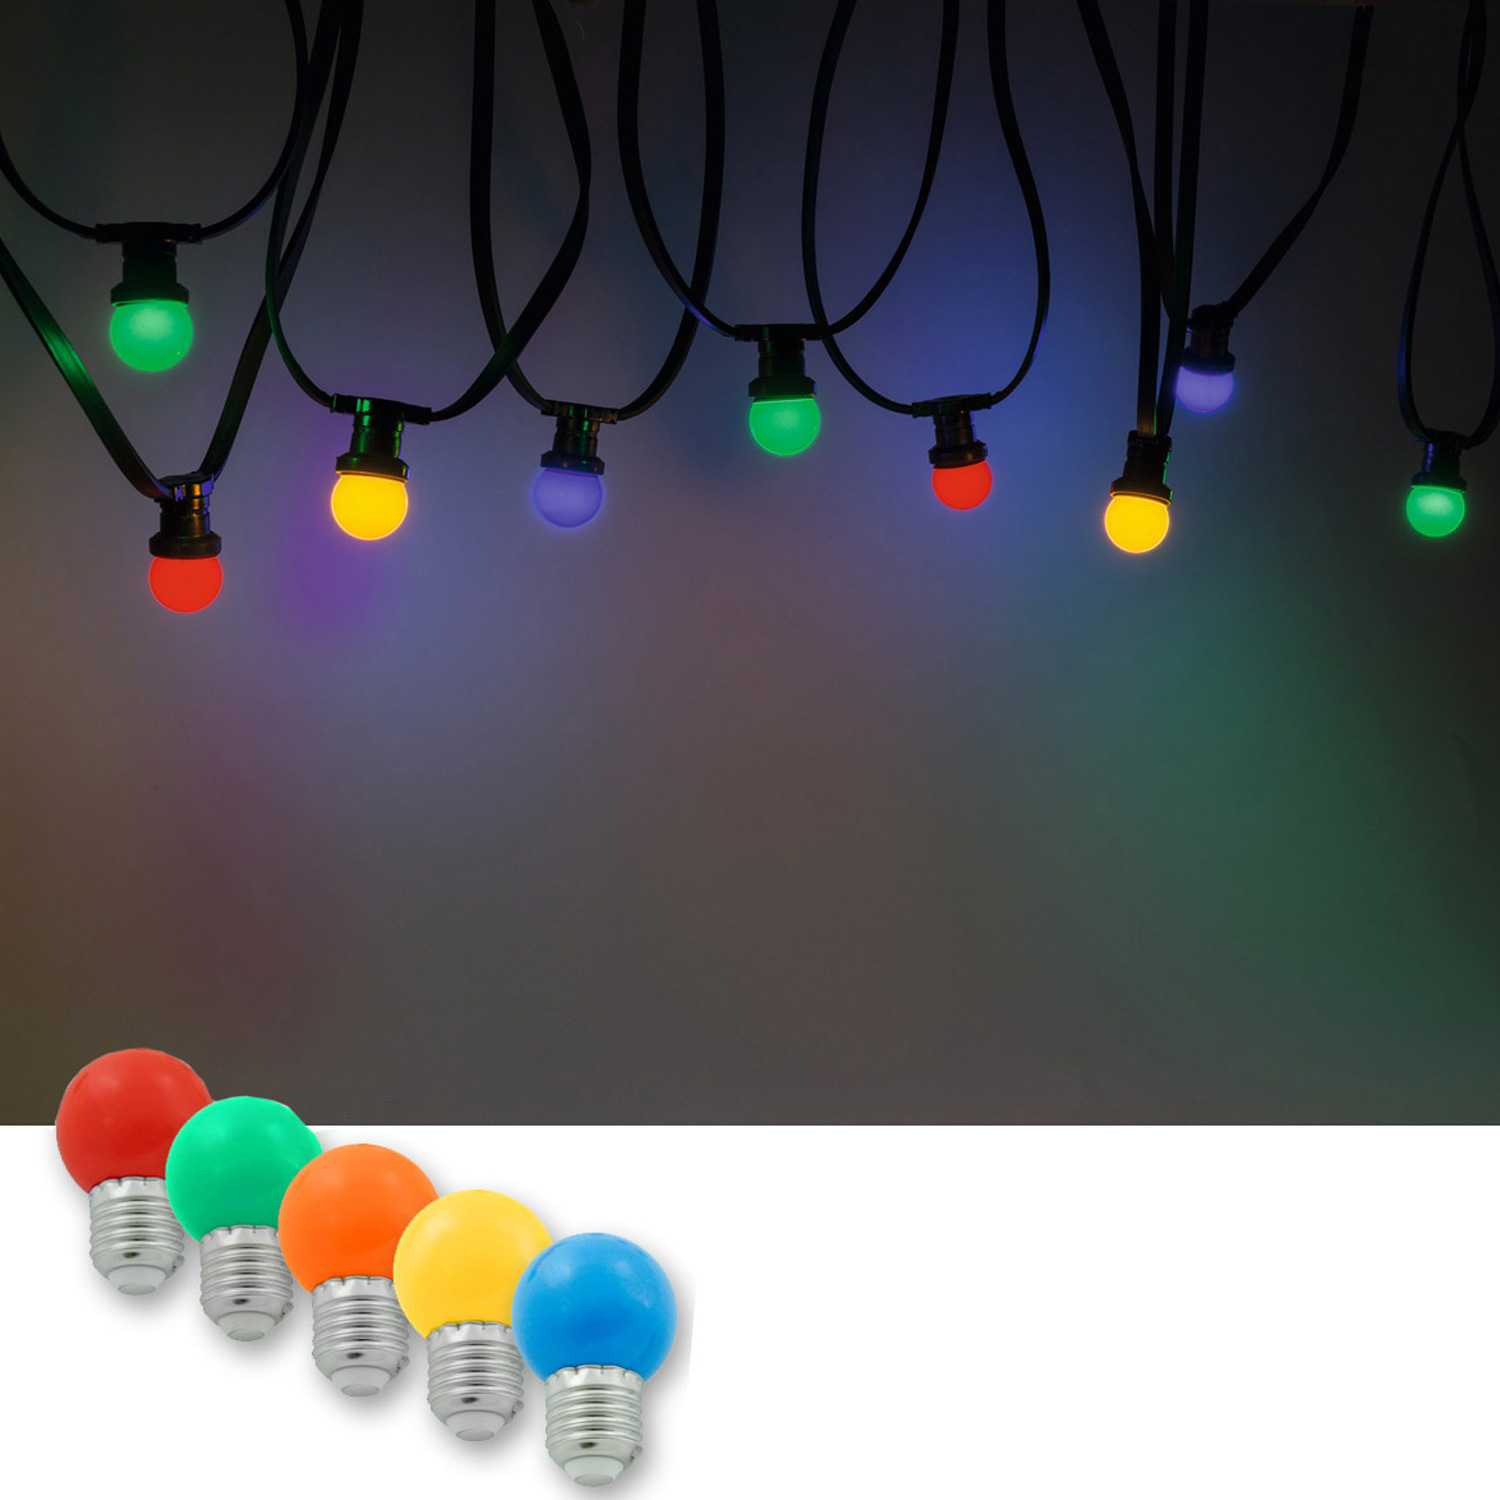 Illu-/Partylichterkette 10m | Außenlichterkette, 10 x bunte LED Lampe - SOMMERDEAL